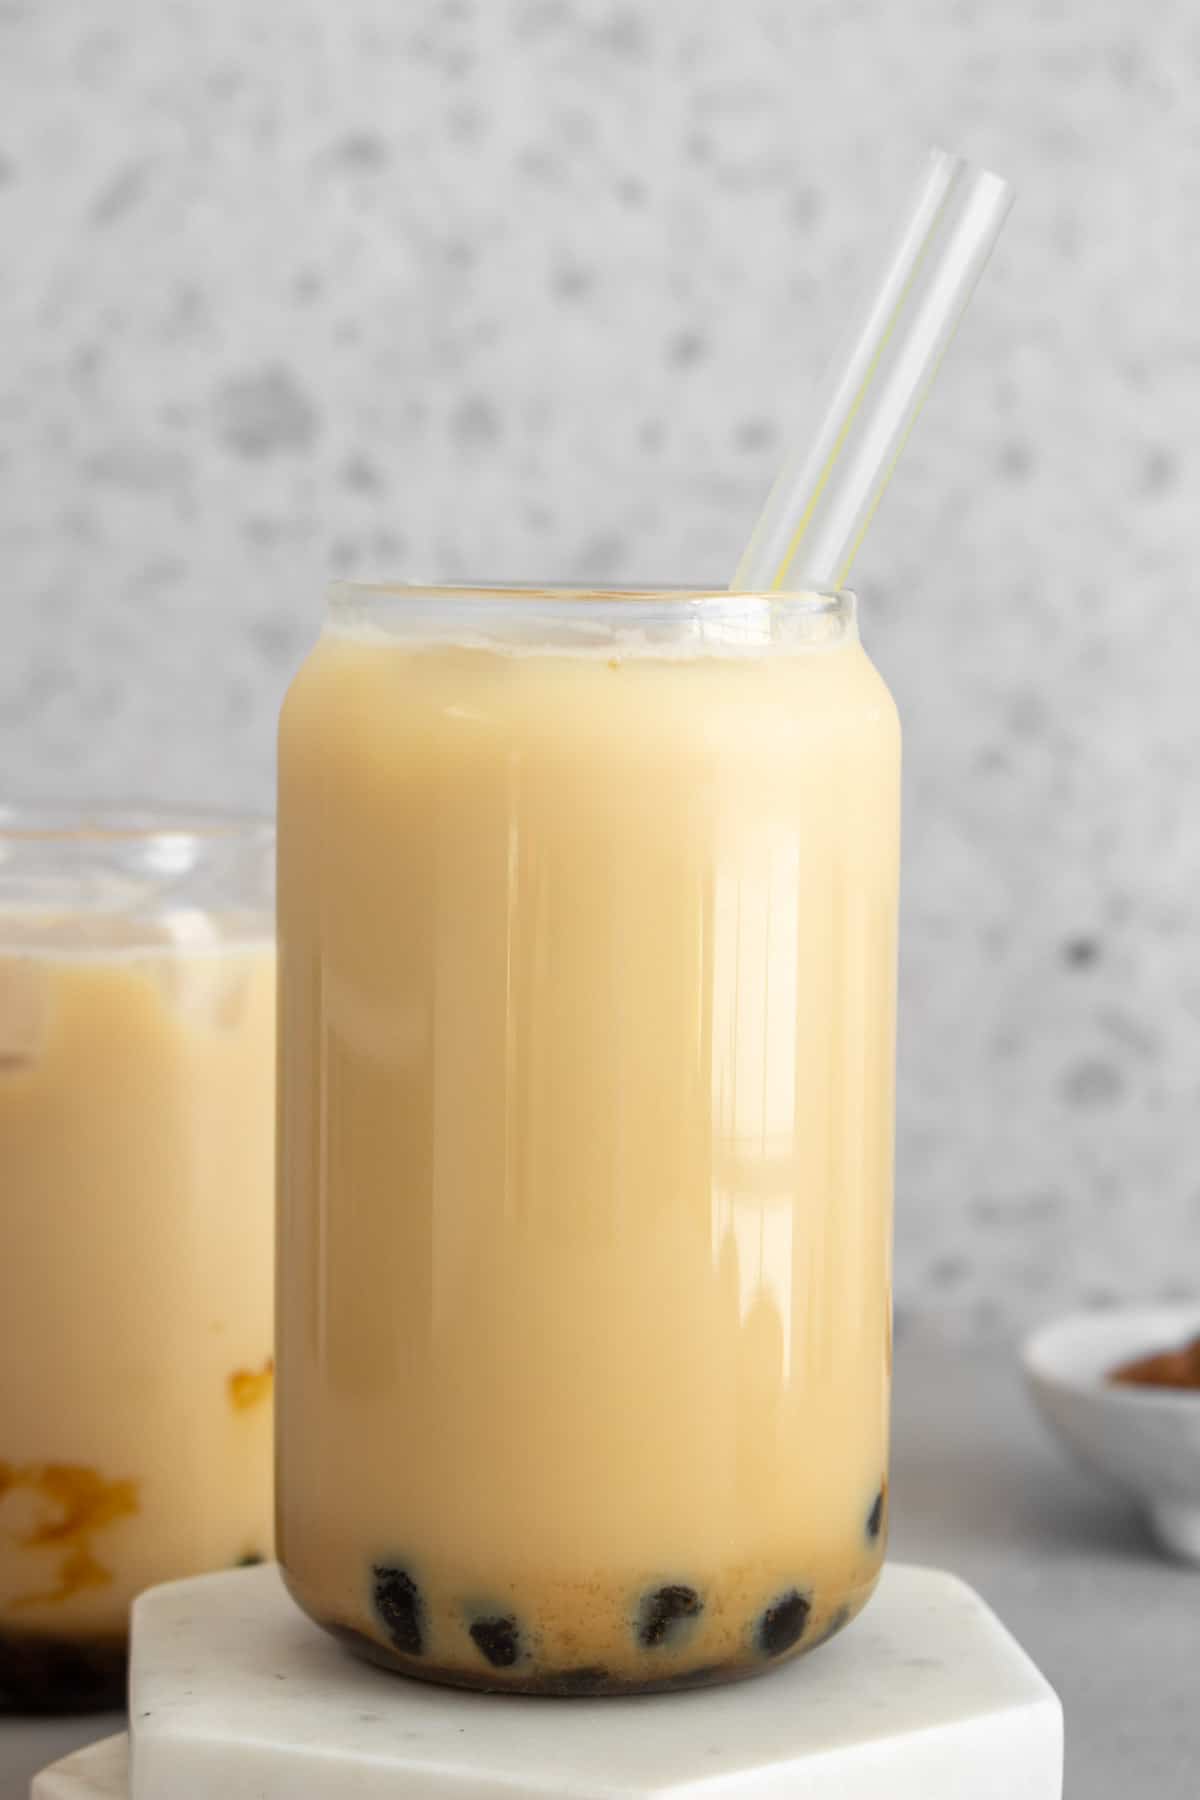 A glass of jasmine milk tea with tapioca with a straw.